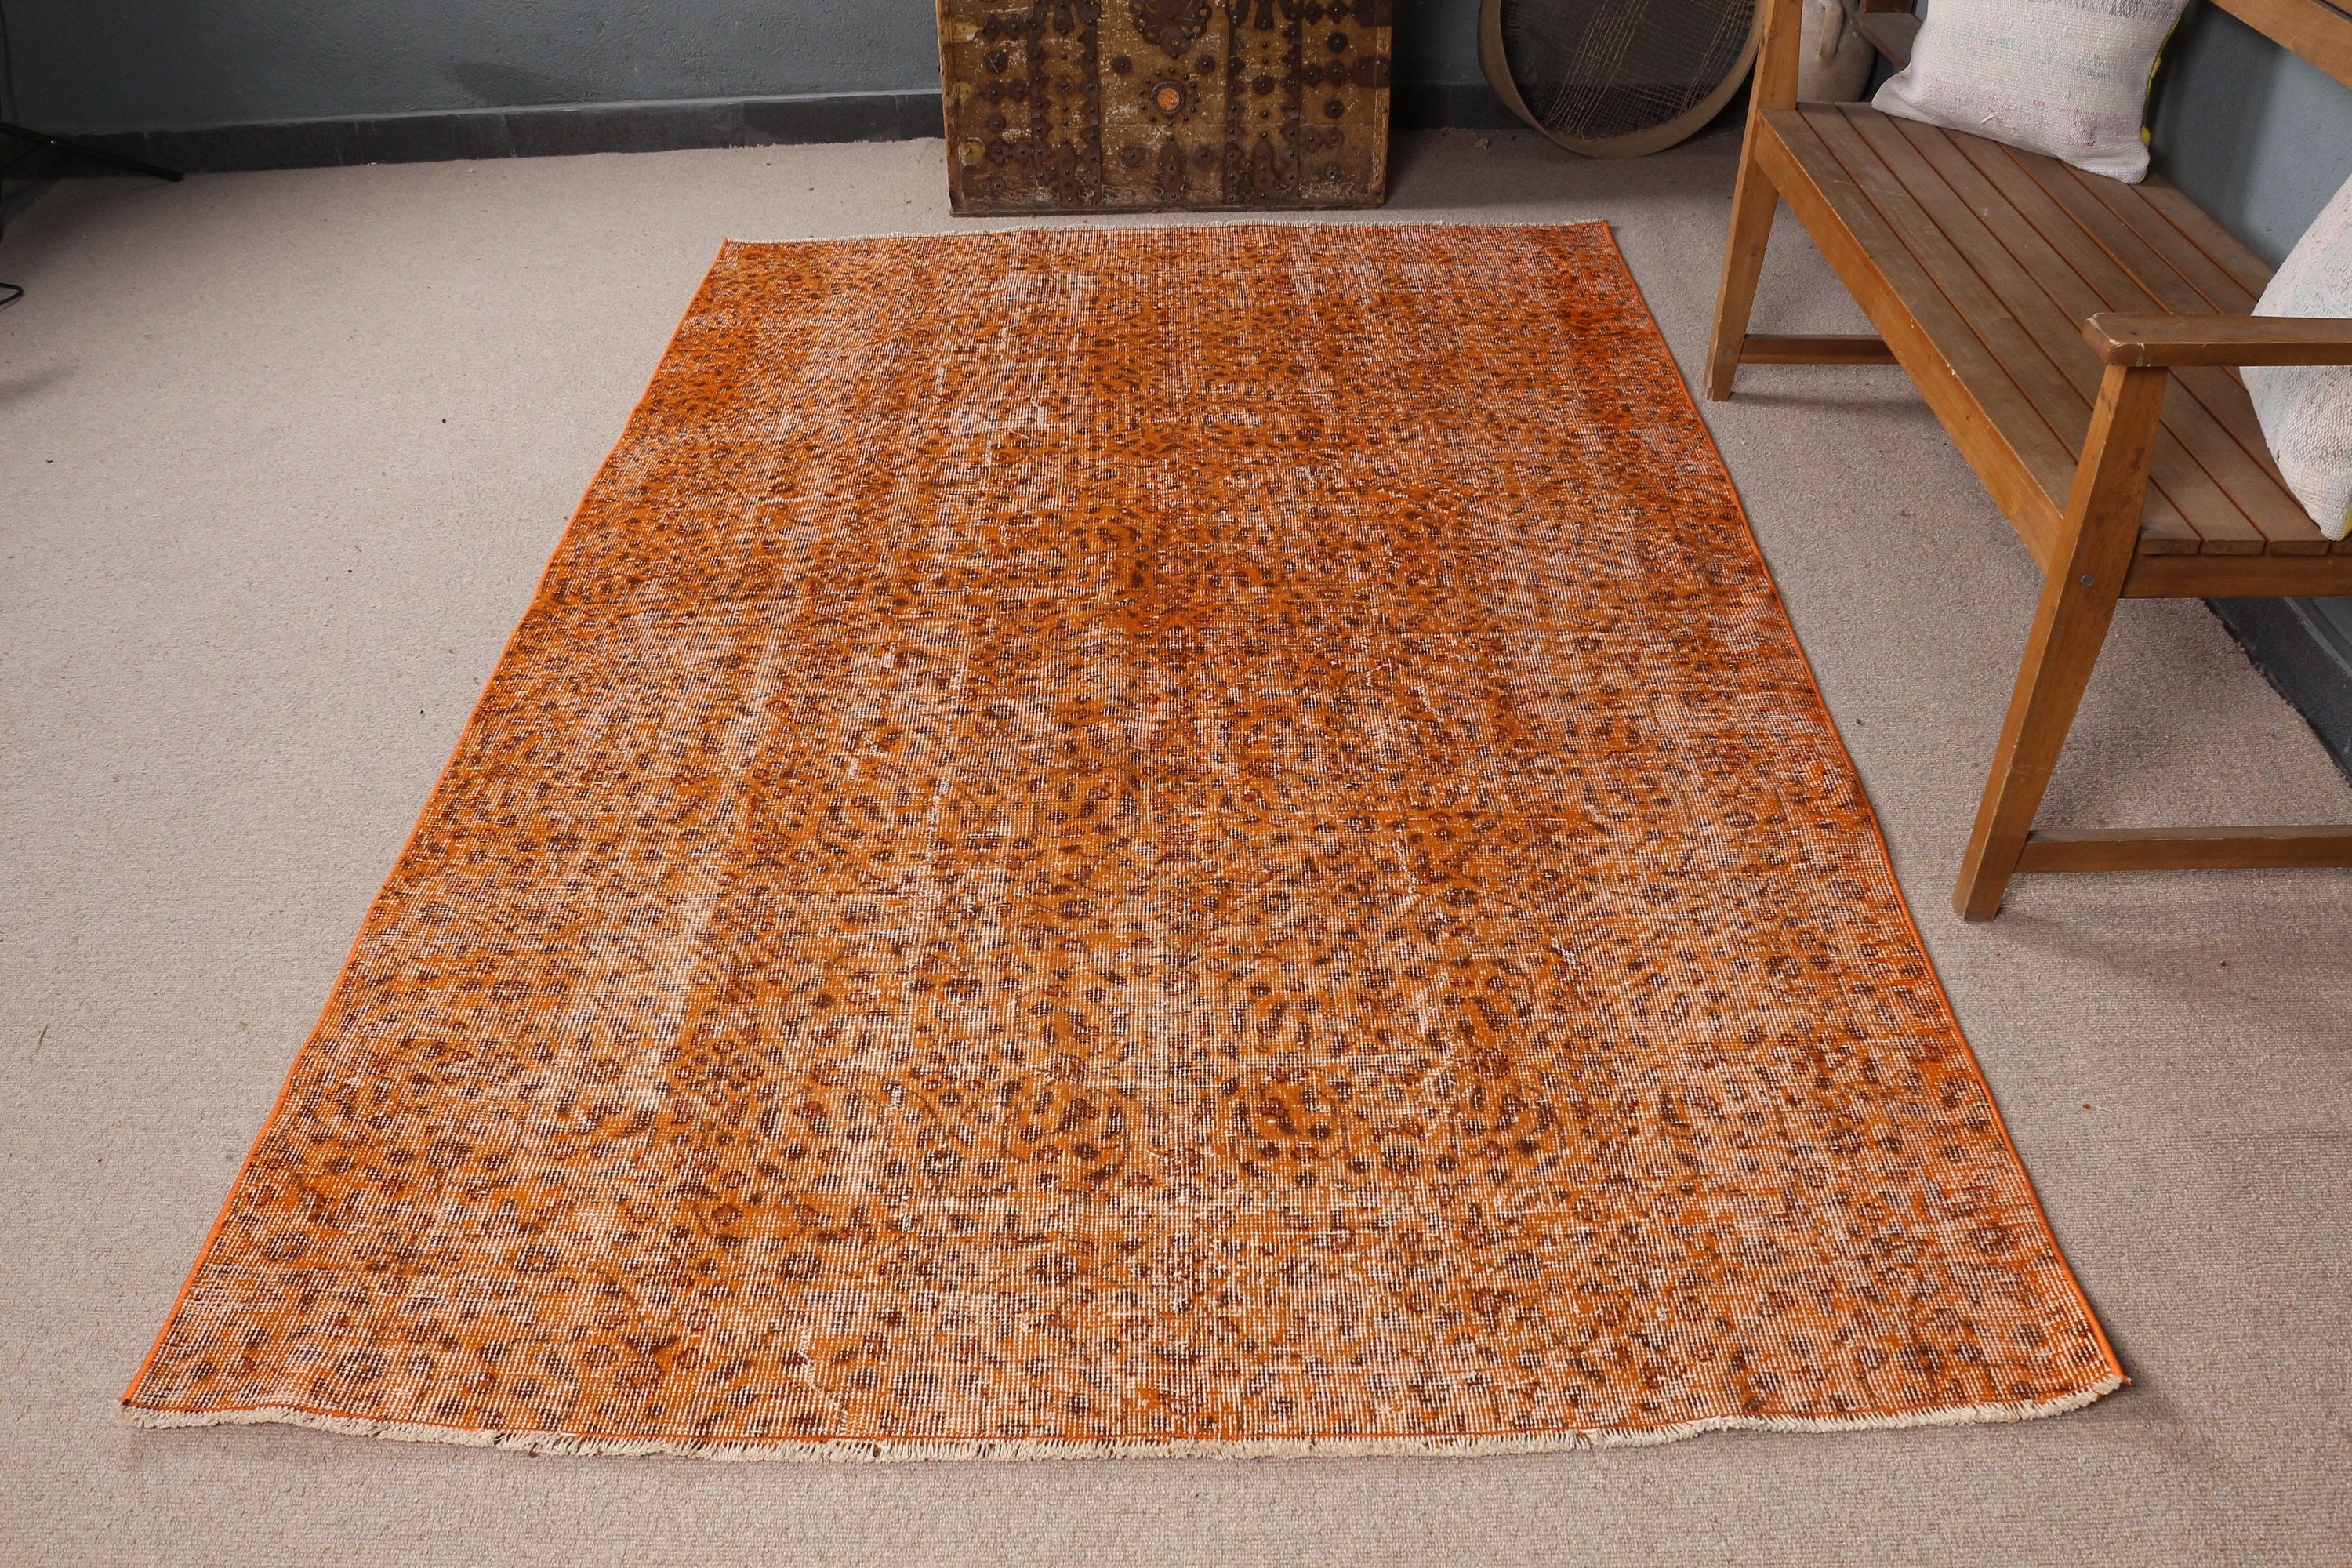 Turkish Rugs, Vintage Rugs, Living Room Rug, Orange Oriental Rugs, Dining Room Rug, 5.2x8.2 ft Large Rug, Bedroom Rug